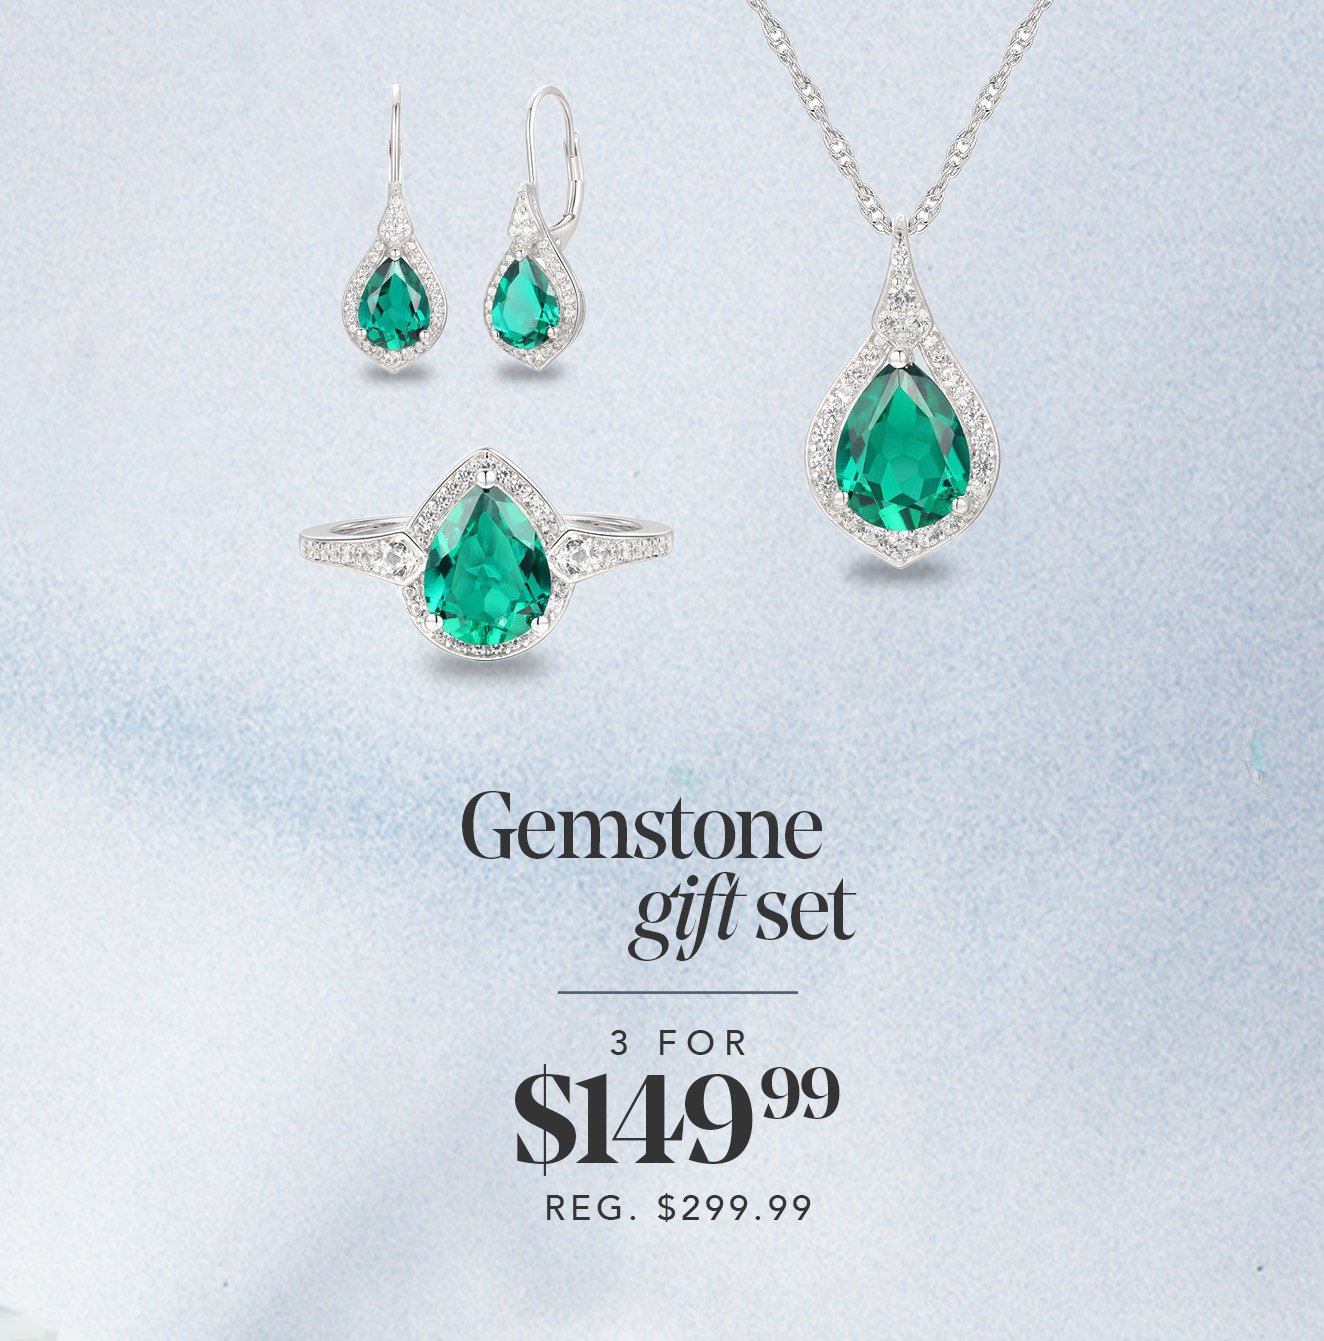 Gemstone gift set | 3 FOR \\$149.99 | REG. \\$249.99